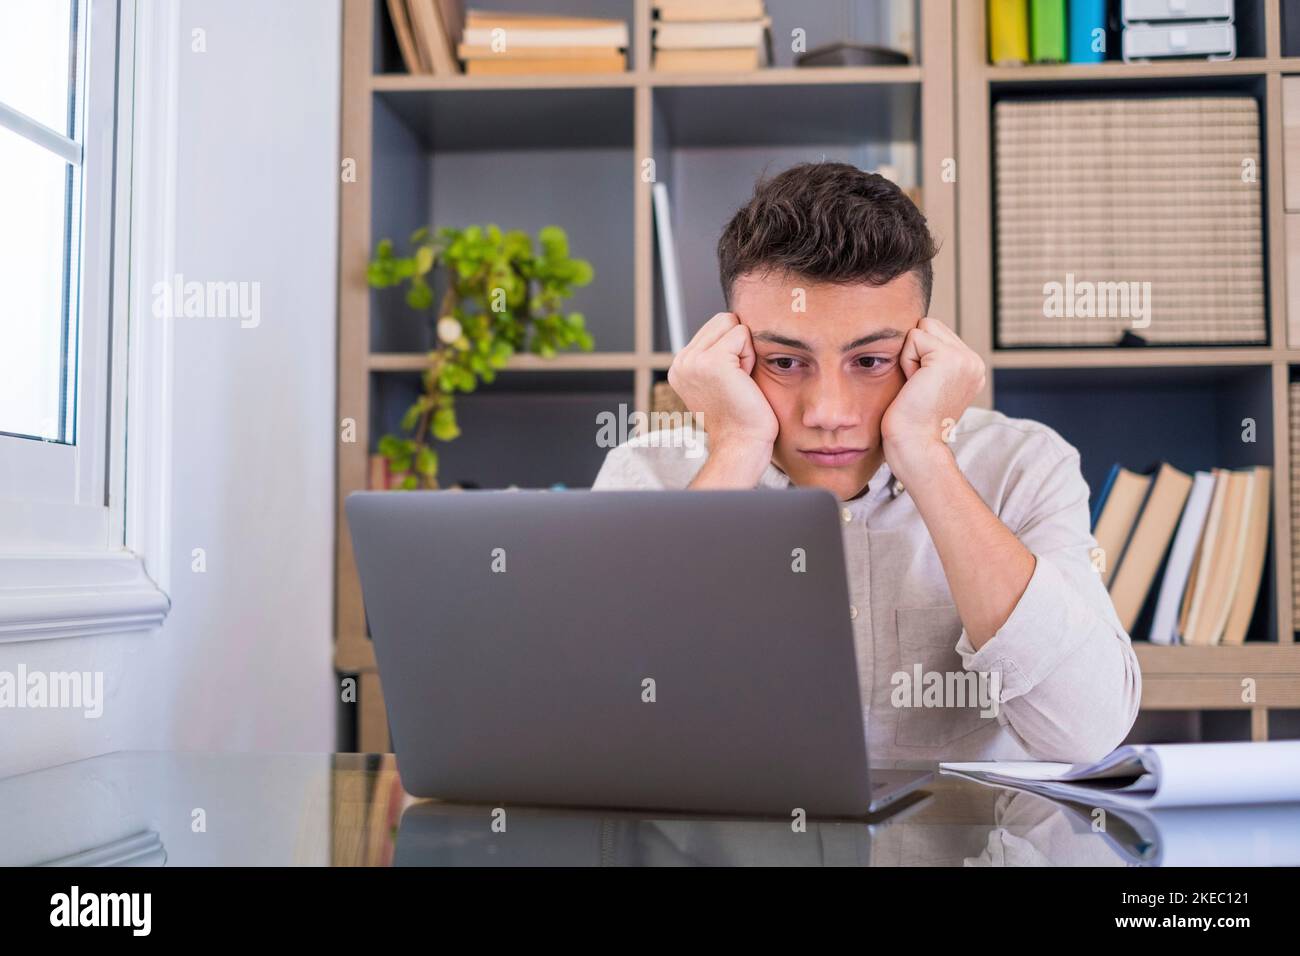 Müde männliche Student oder Arbeiter sitzen zu Hause Schreibtisch Blick in der Ferne Schlafentzug, faul Millennial Mann abgelenkt von der Arbeit fühlen faul Mangel an Motivation, denken an langweilige monotone Arbeit Stockfoto